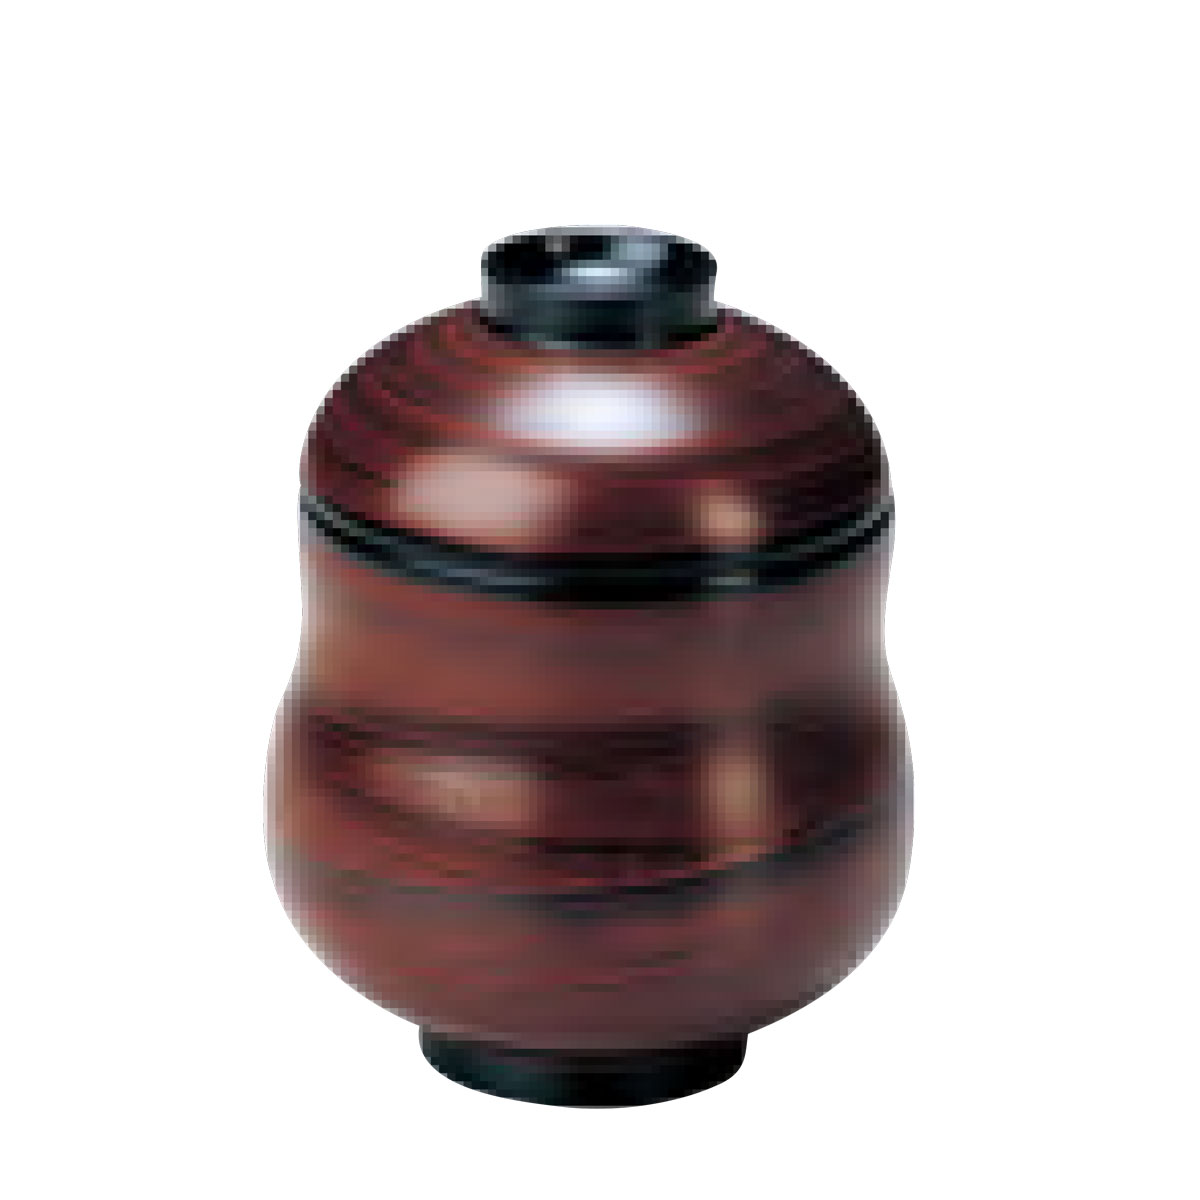 小吸物椀 日月白檀 5客セット 漆塗り (MA-607) Bowl with lid